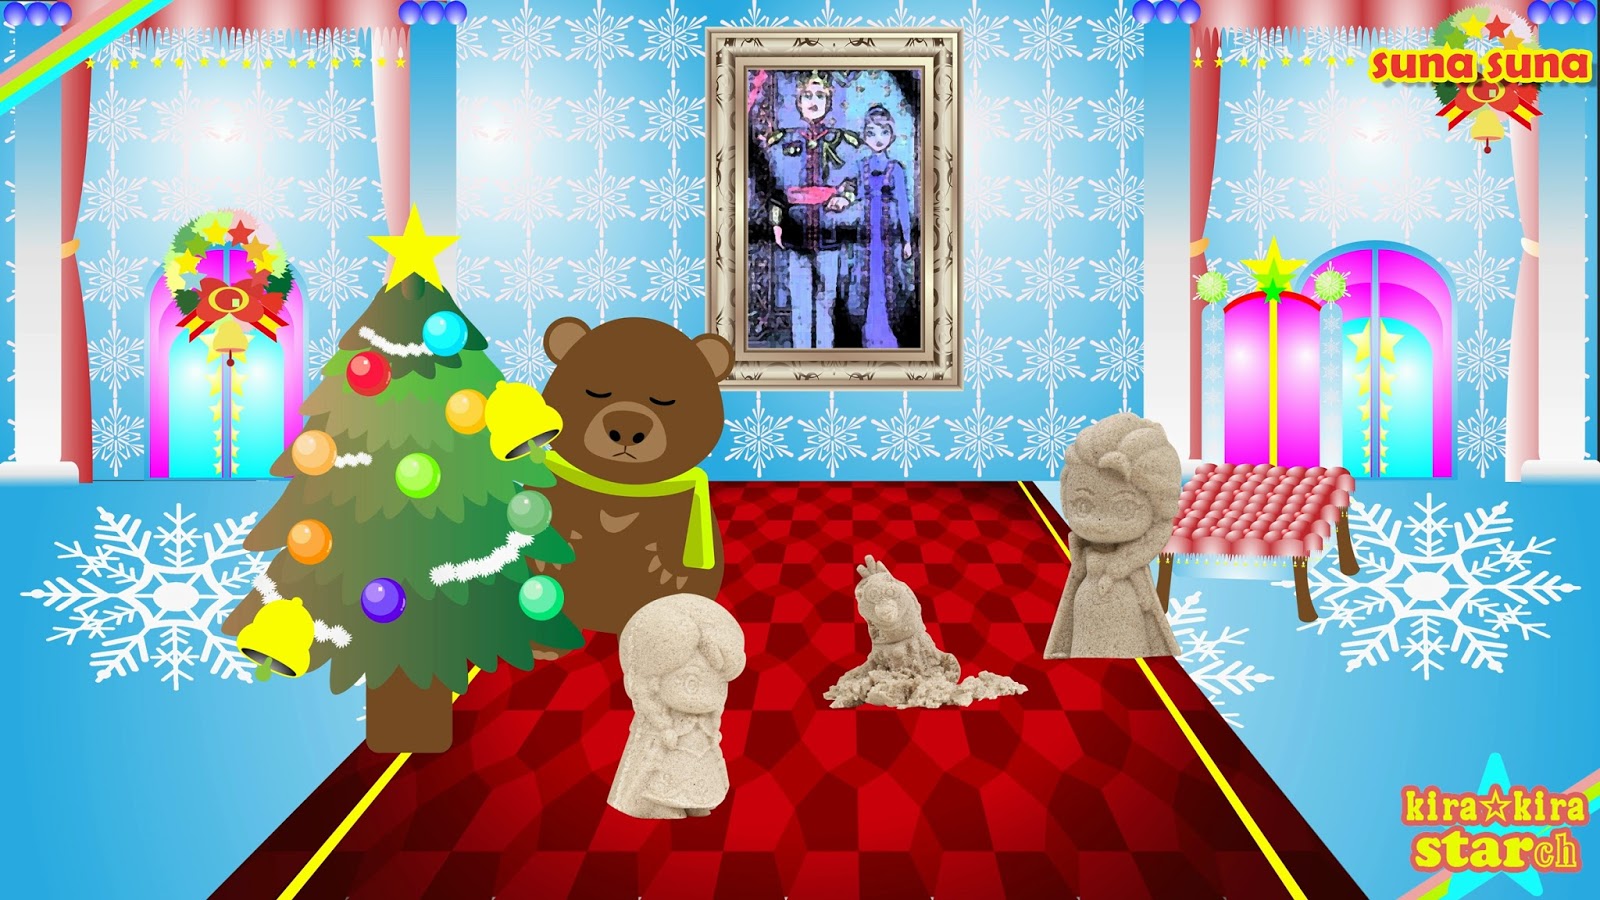 ディズニー アナと雪の女王映画のオラフのクリスマス編第三話 Sunasuna すなすな アナと雪の女王 スナスナ アナ雪 おもちゃで遊ぶ アンパンマンも登場 Frozen Toys キラキラスター チャンネル